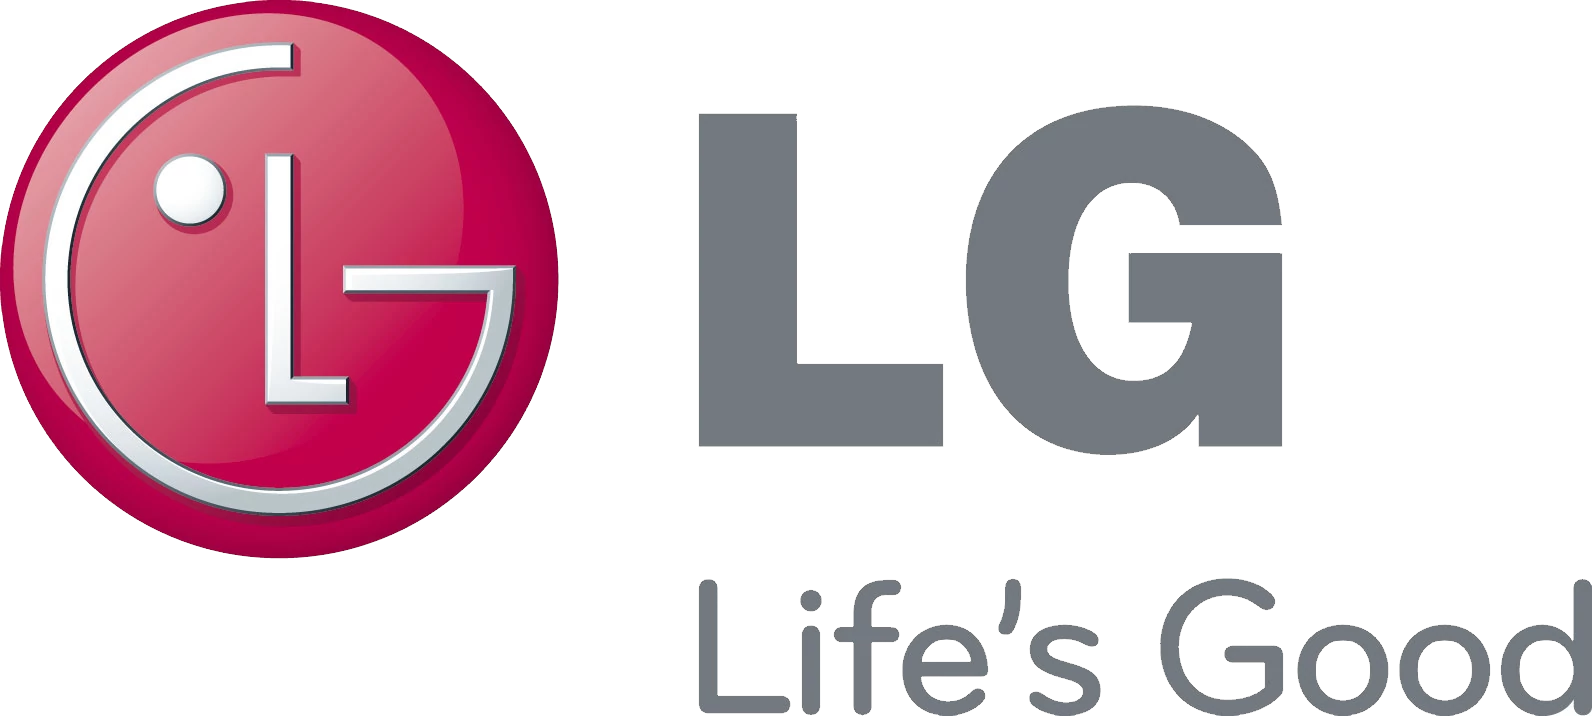 lg-tv-logo